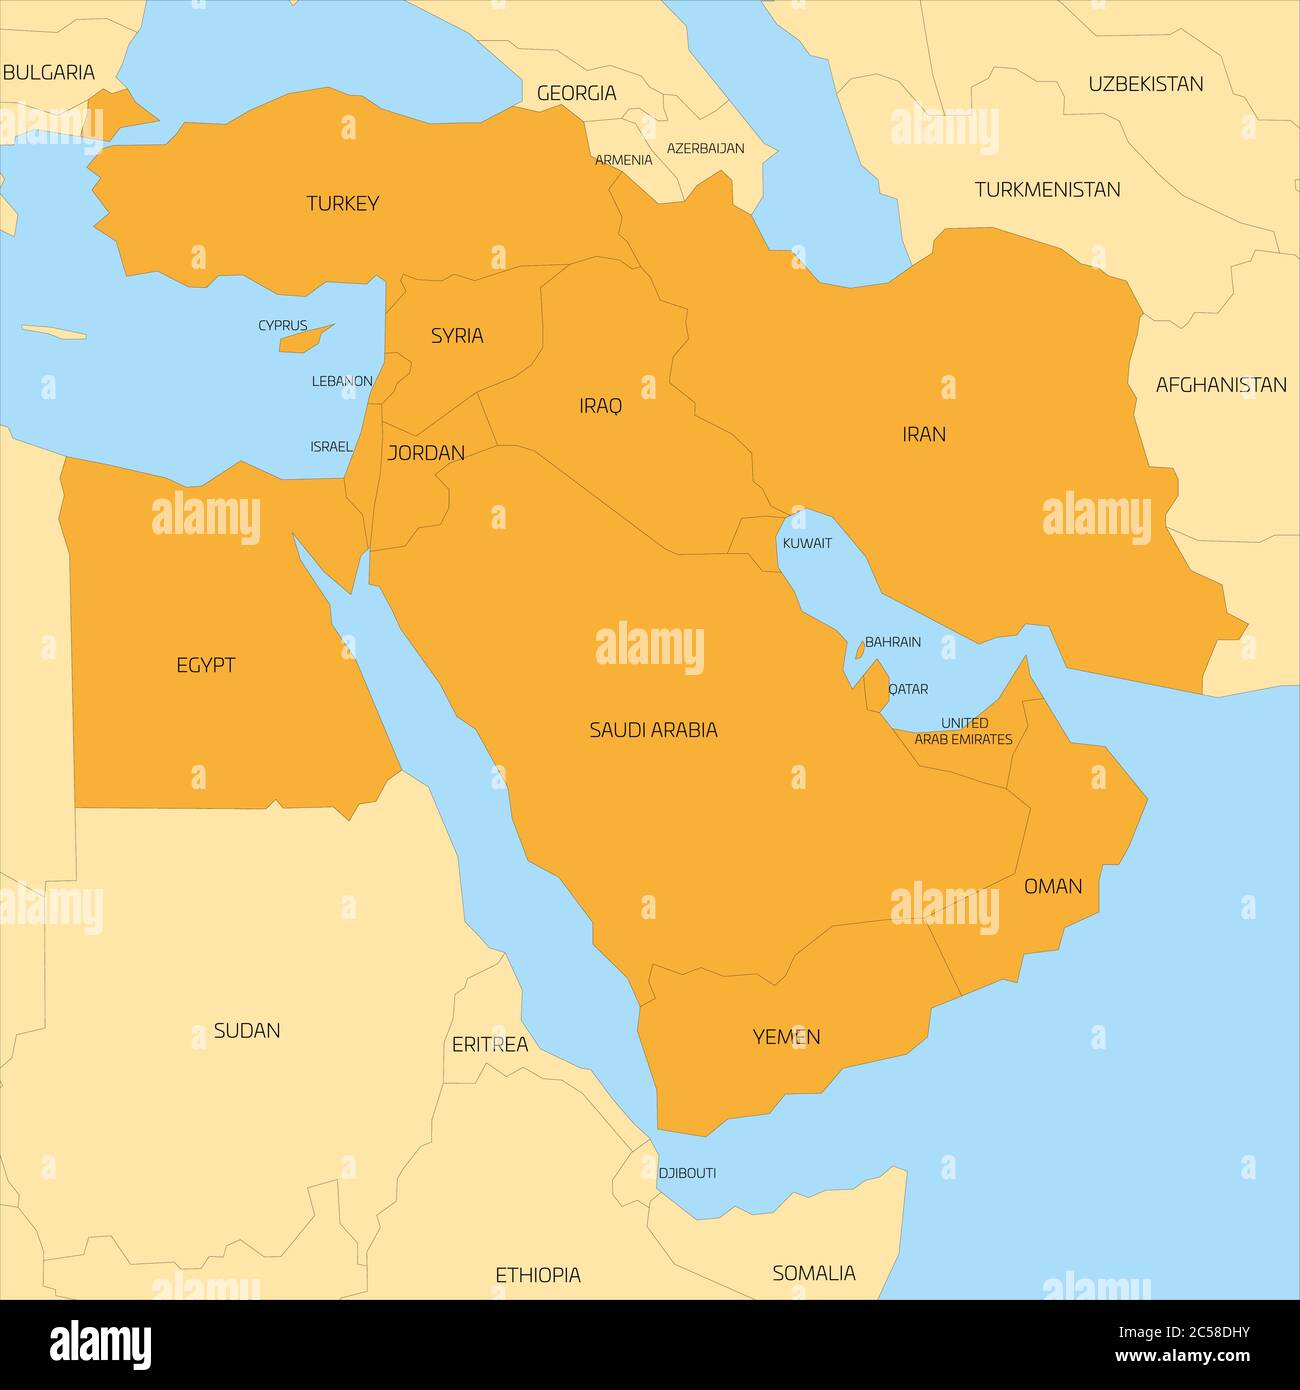 Karte der transkontinentalen Region Naher Osten oder Naher Osten mit orange markierten Ländern Westasiens, der Türkei, Zypern und Ägypten. Flache Karte mit gelbem Land, dünnen schwarzen Grenzen und blauem Meer. Stock Vektor